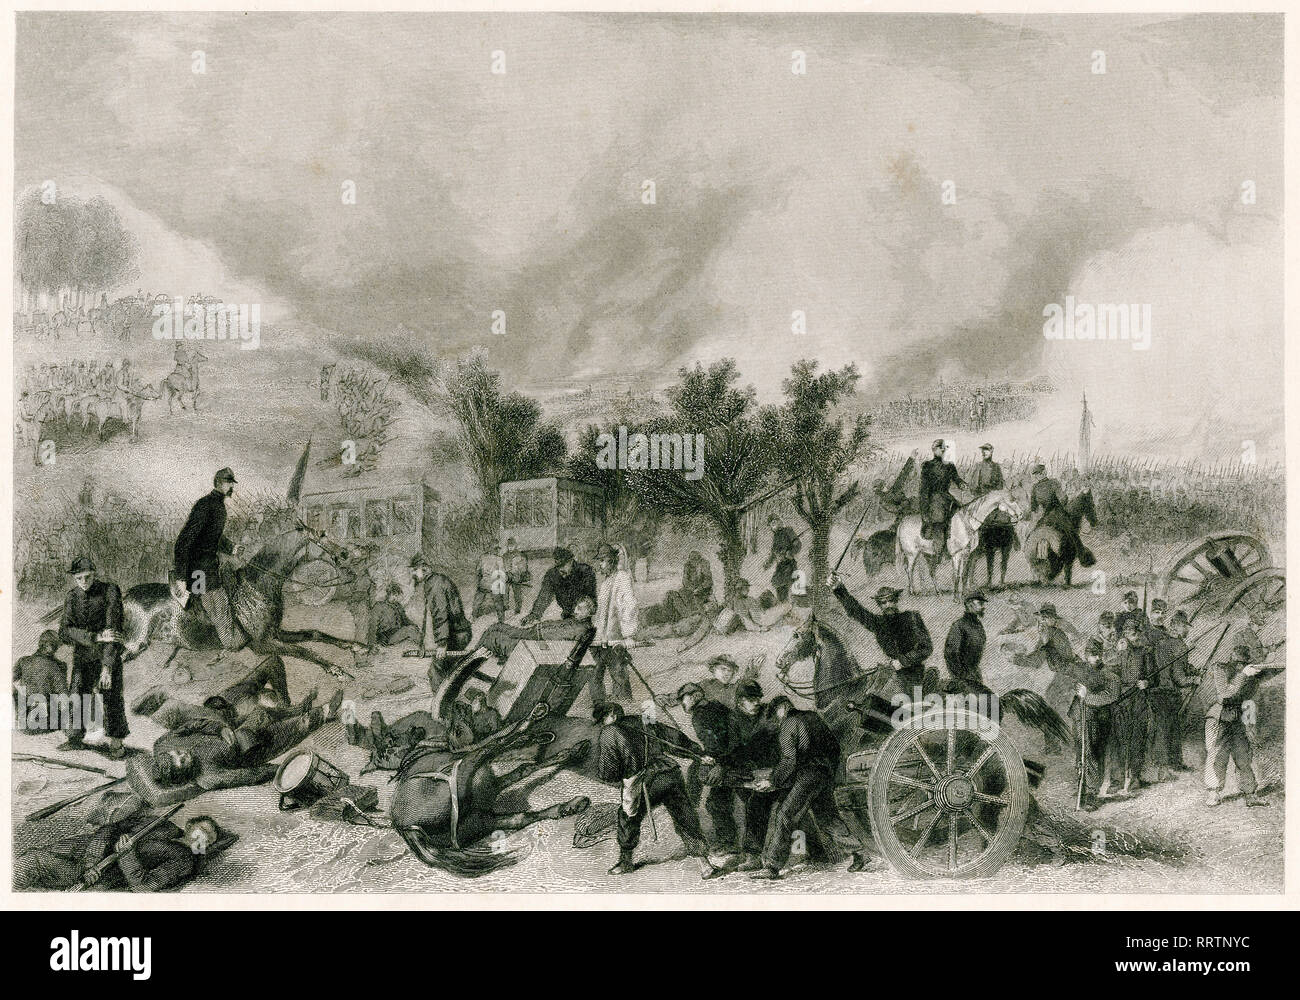 Schlacht von Gettysburg, amerikanischer Bürgerkrieg, Stahlstich von Alonzo Chappel, 1864 Stockfoto